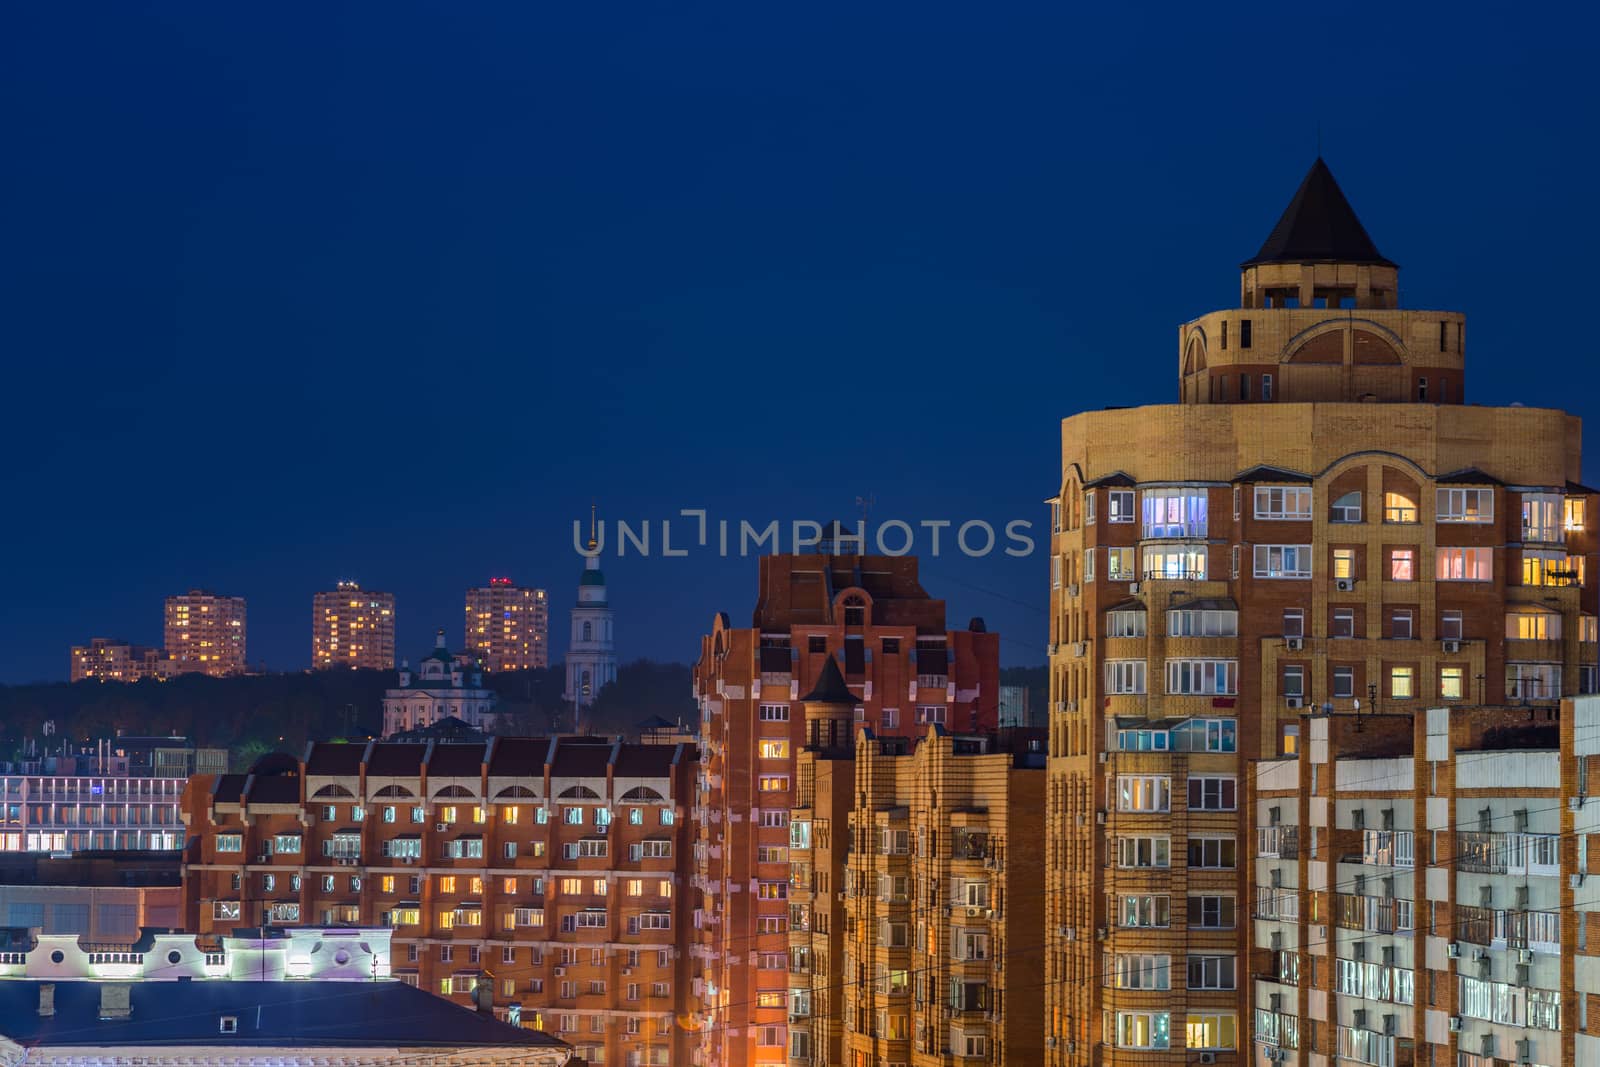 night russian Tula cityscape in telephoto with dense development